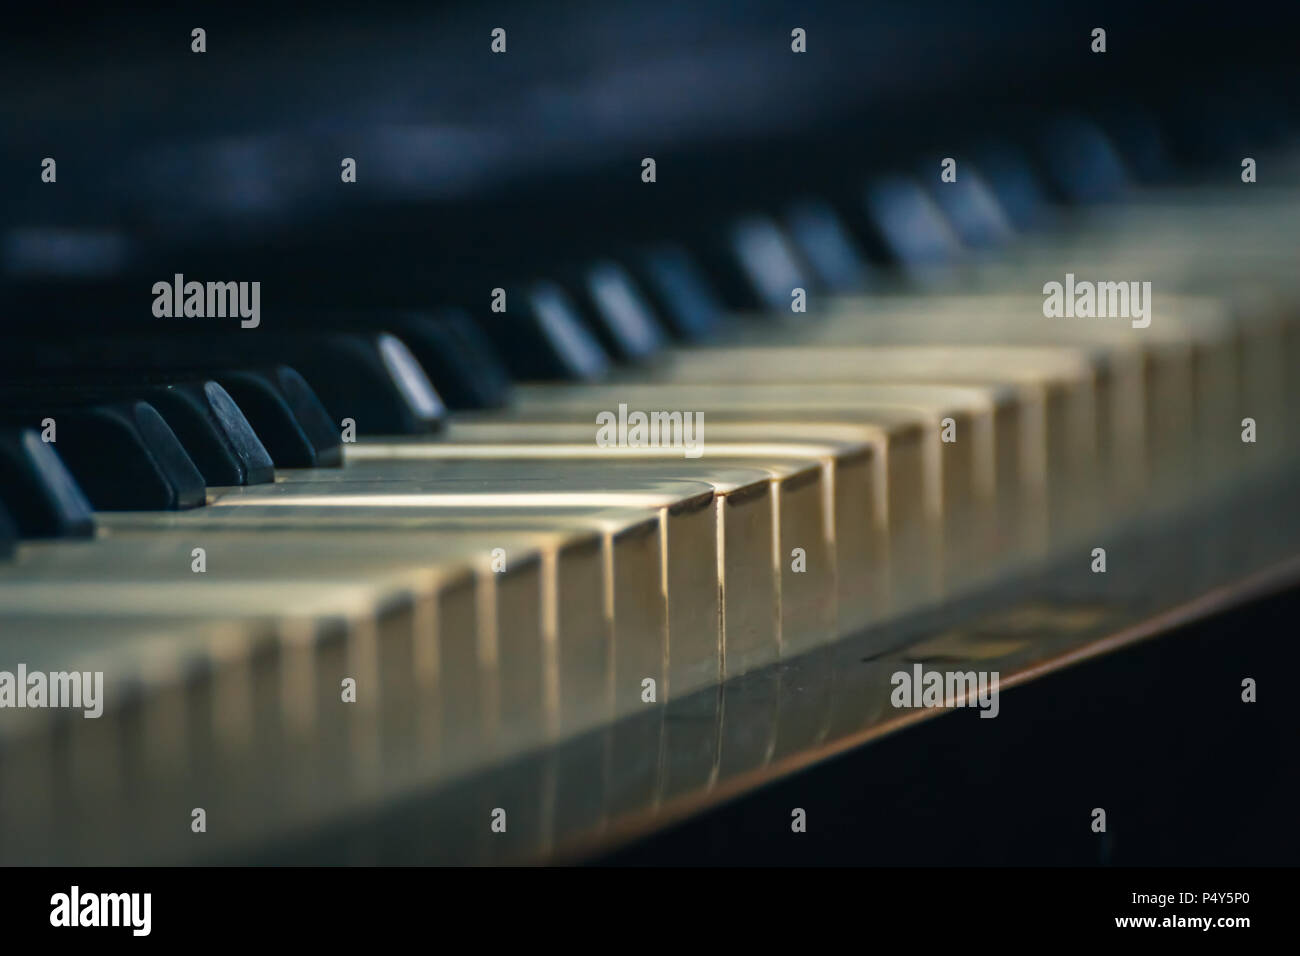 Vista dettagliata del pianoforte antico tasti in avorio Foto Stock